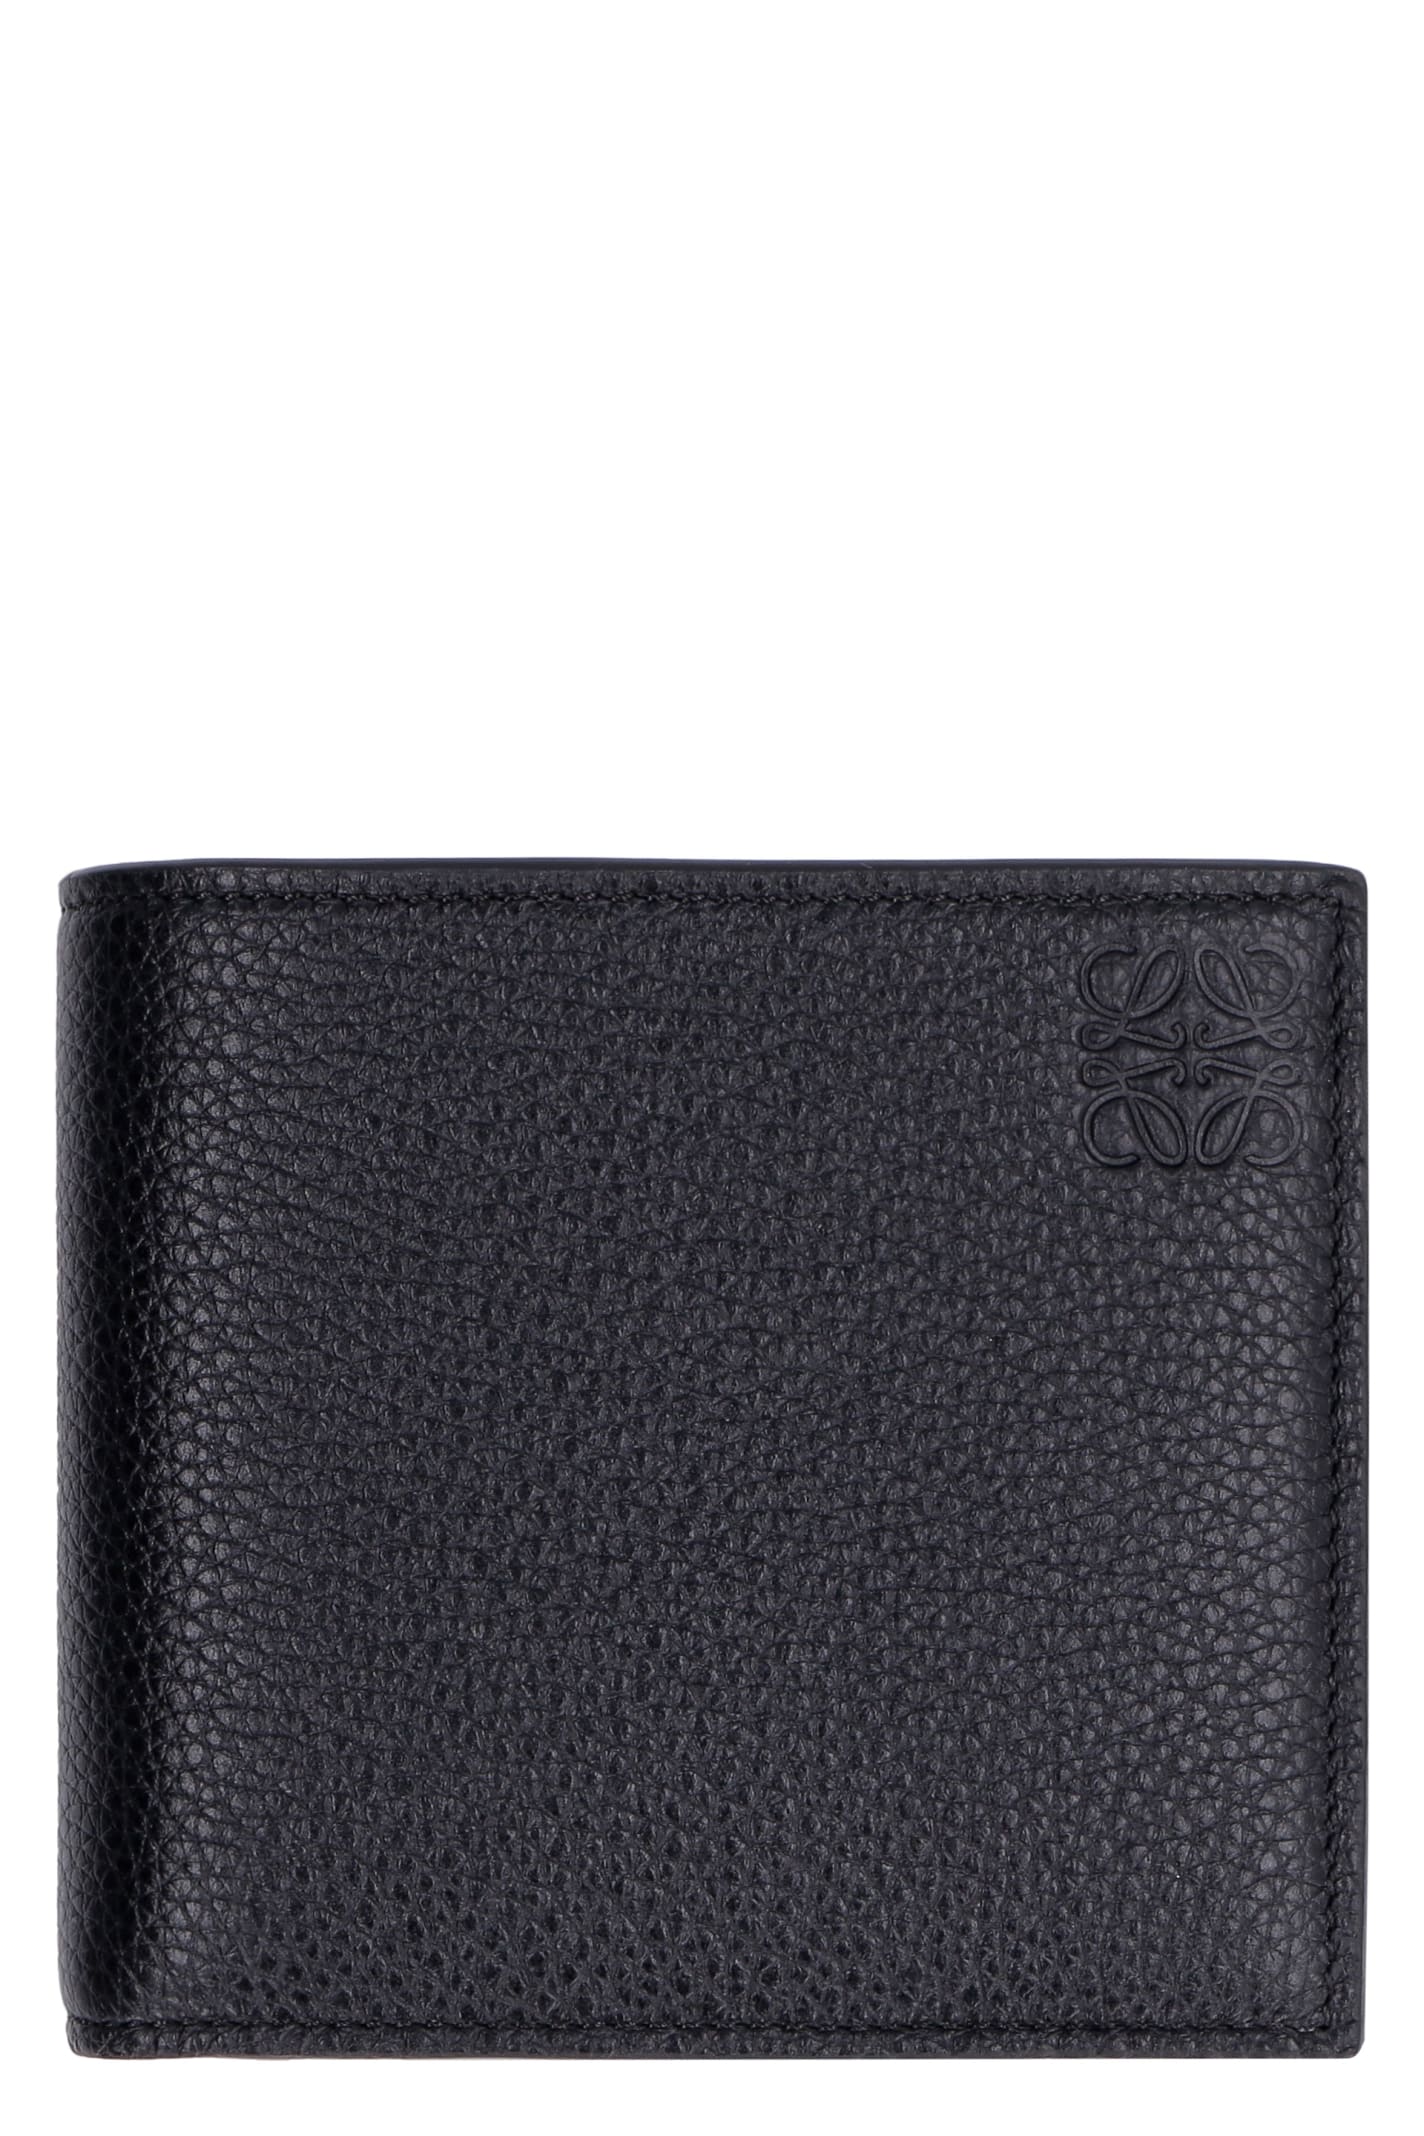 Loewe Leather Flap-over Wallet In Black